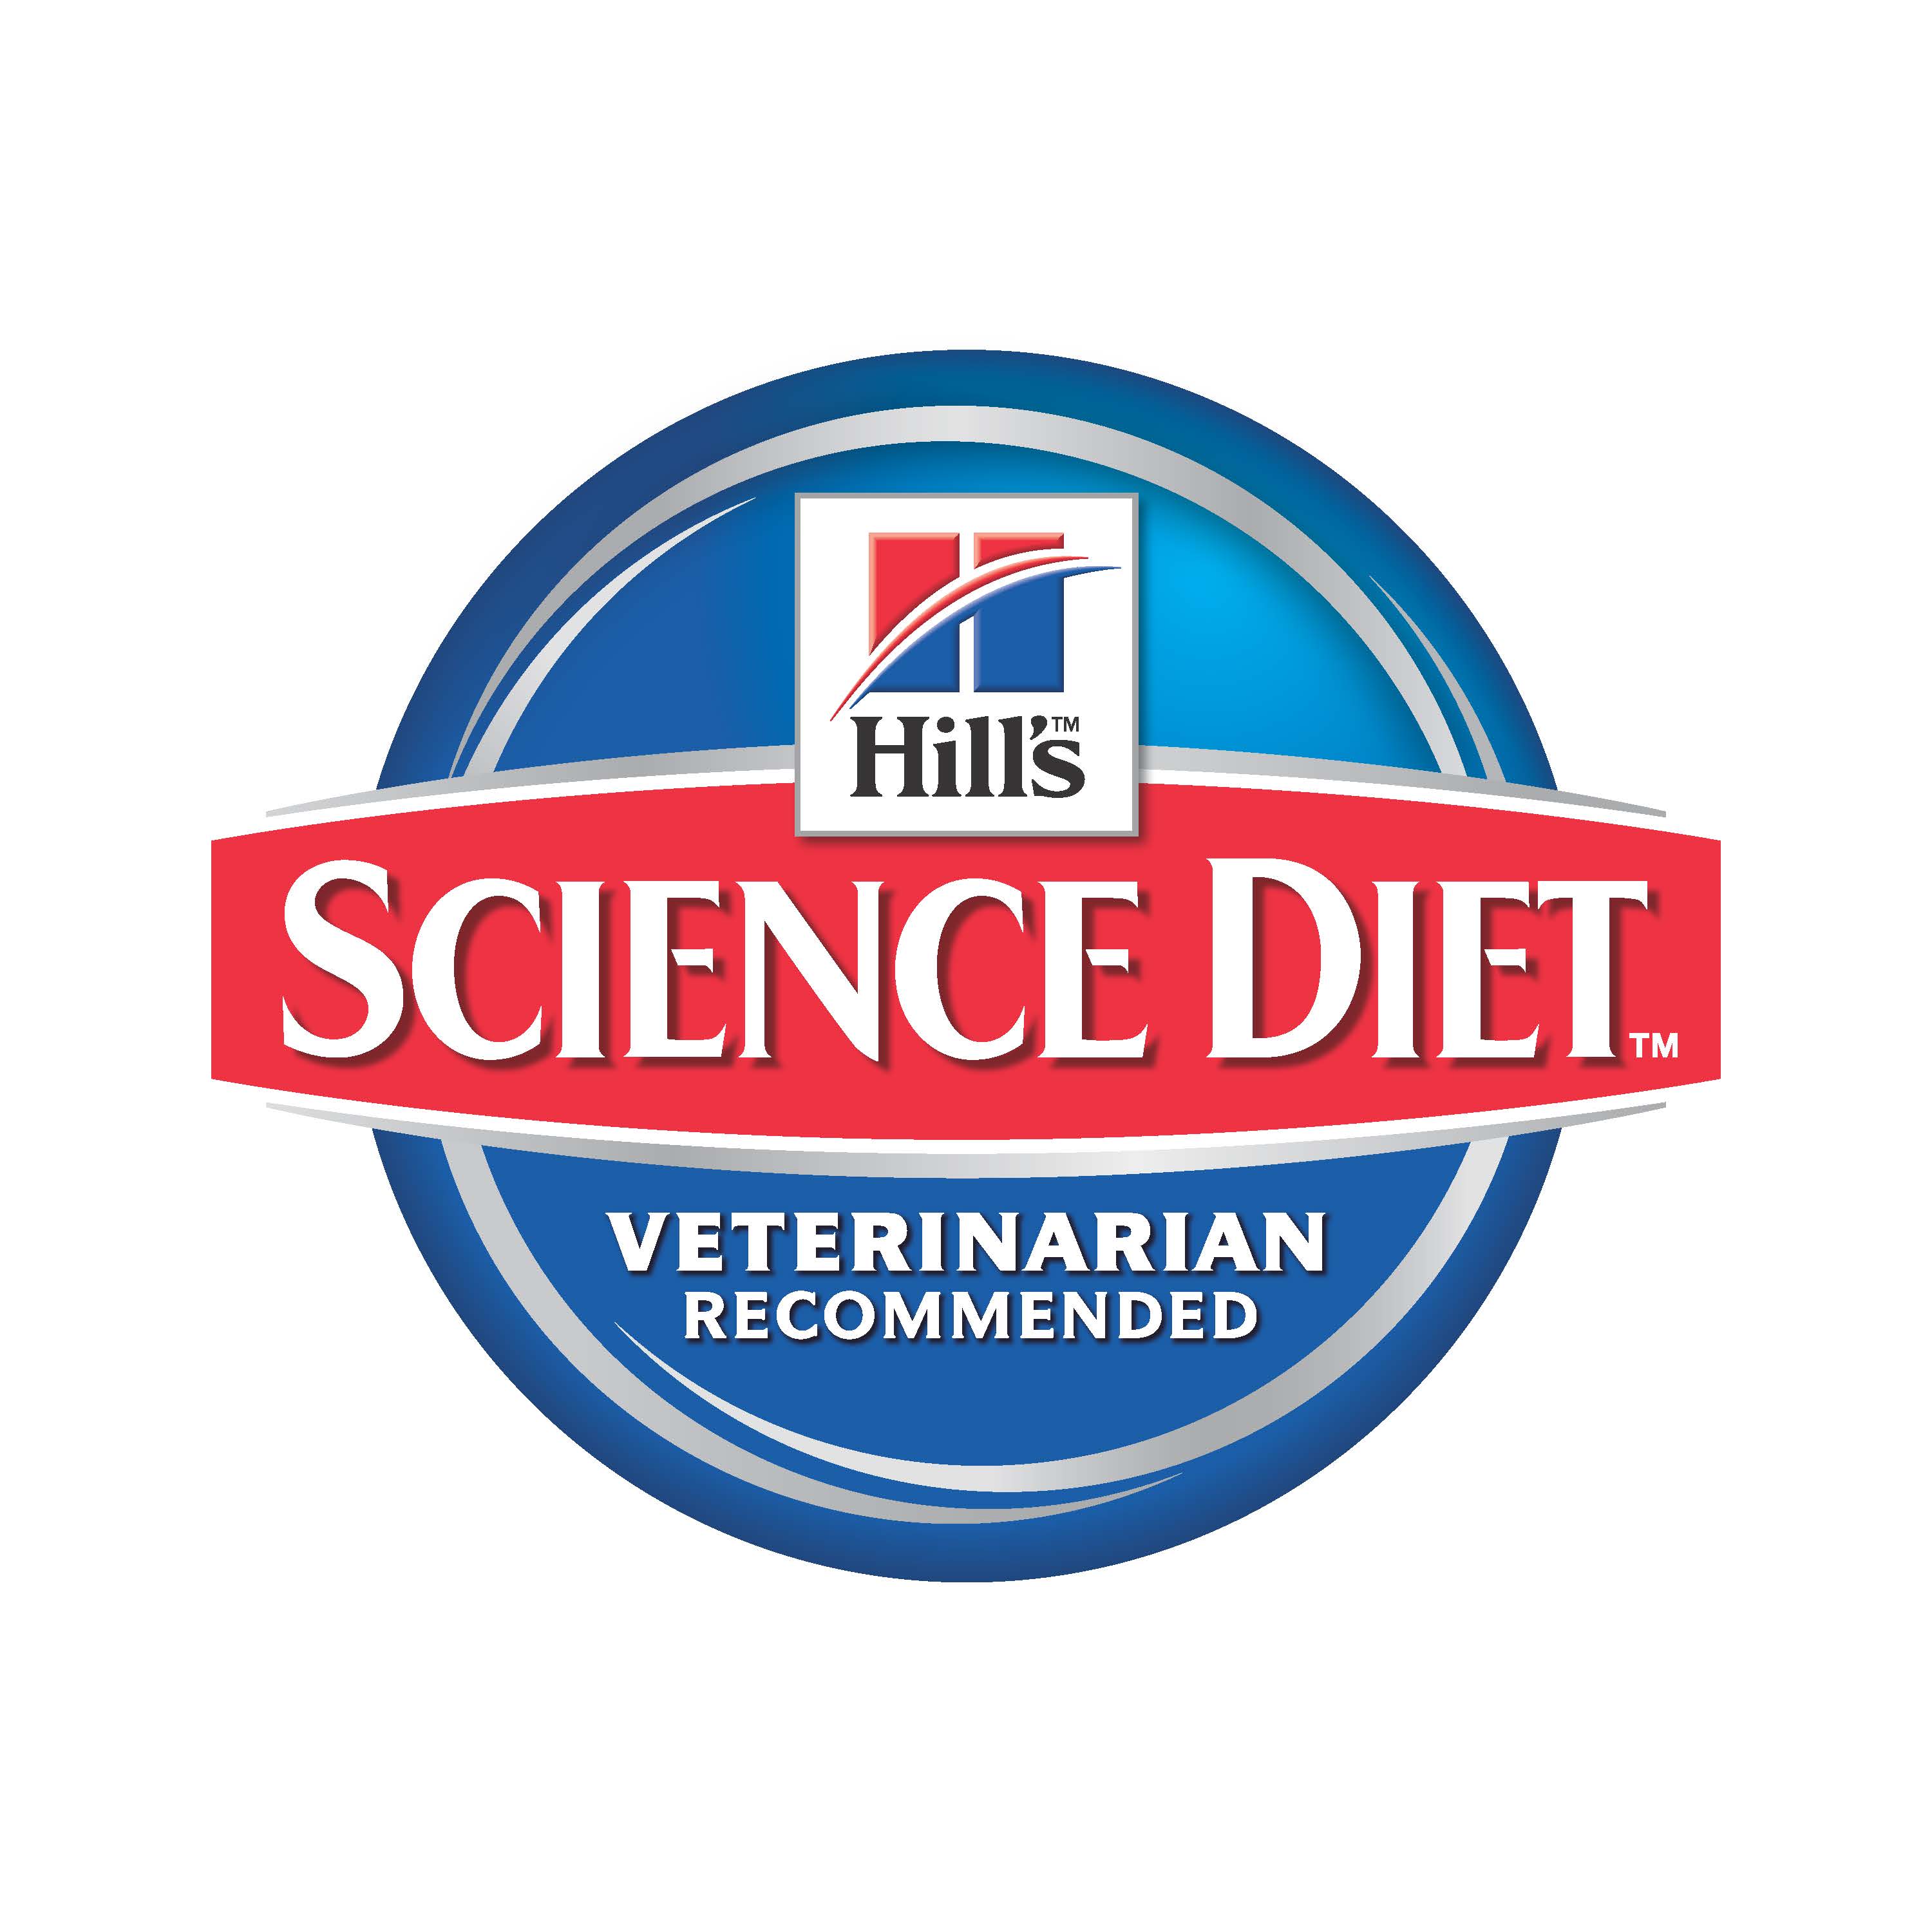 Hills Science Diet